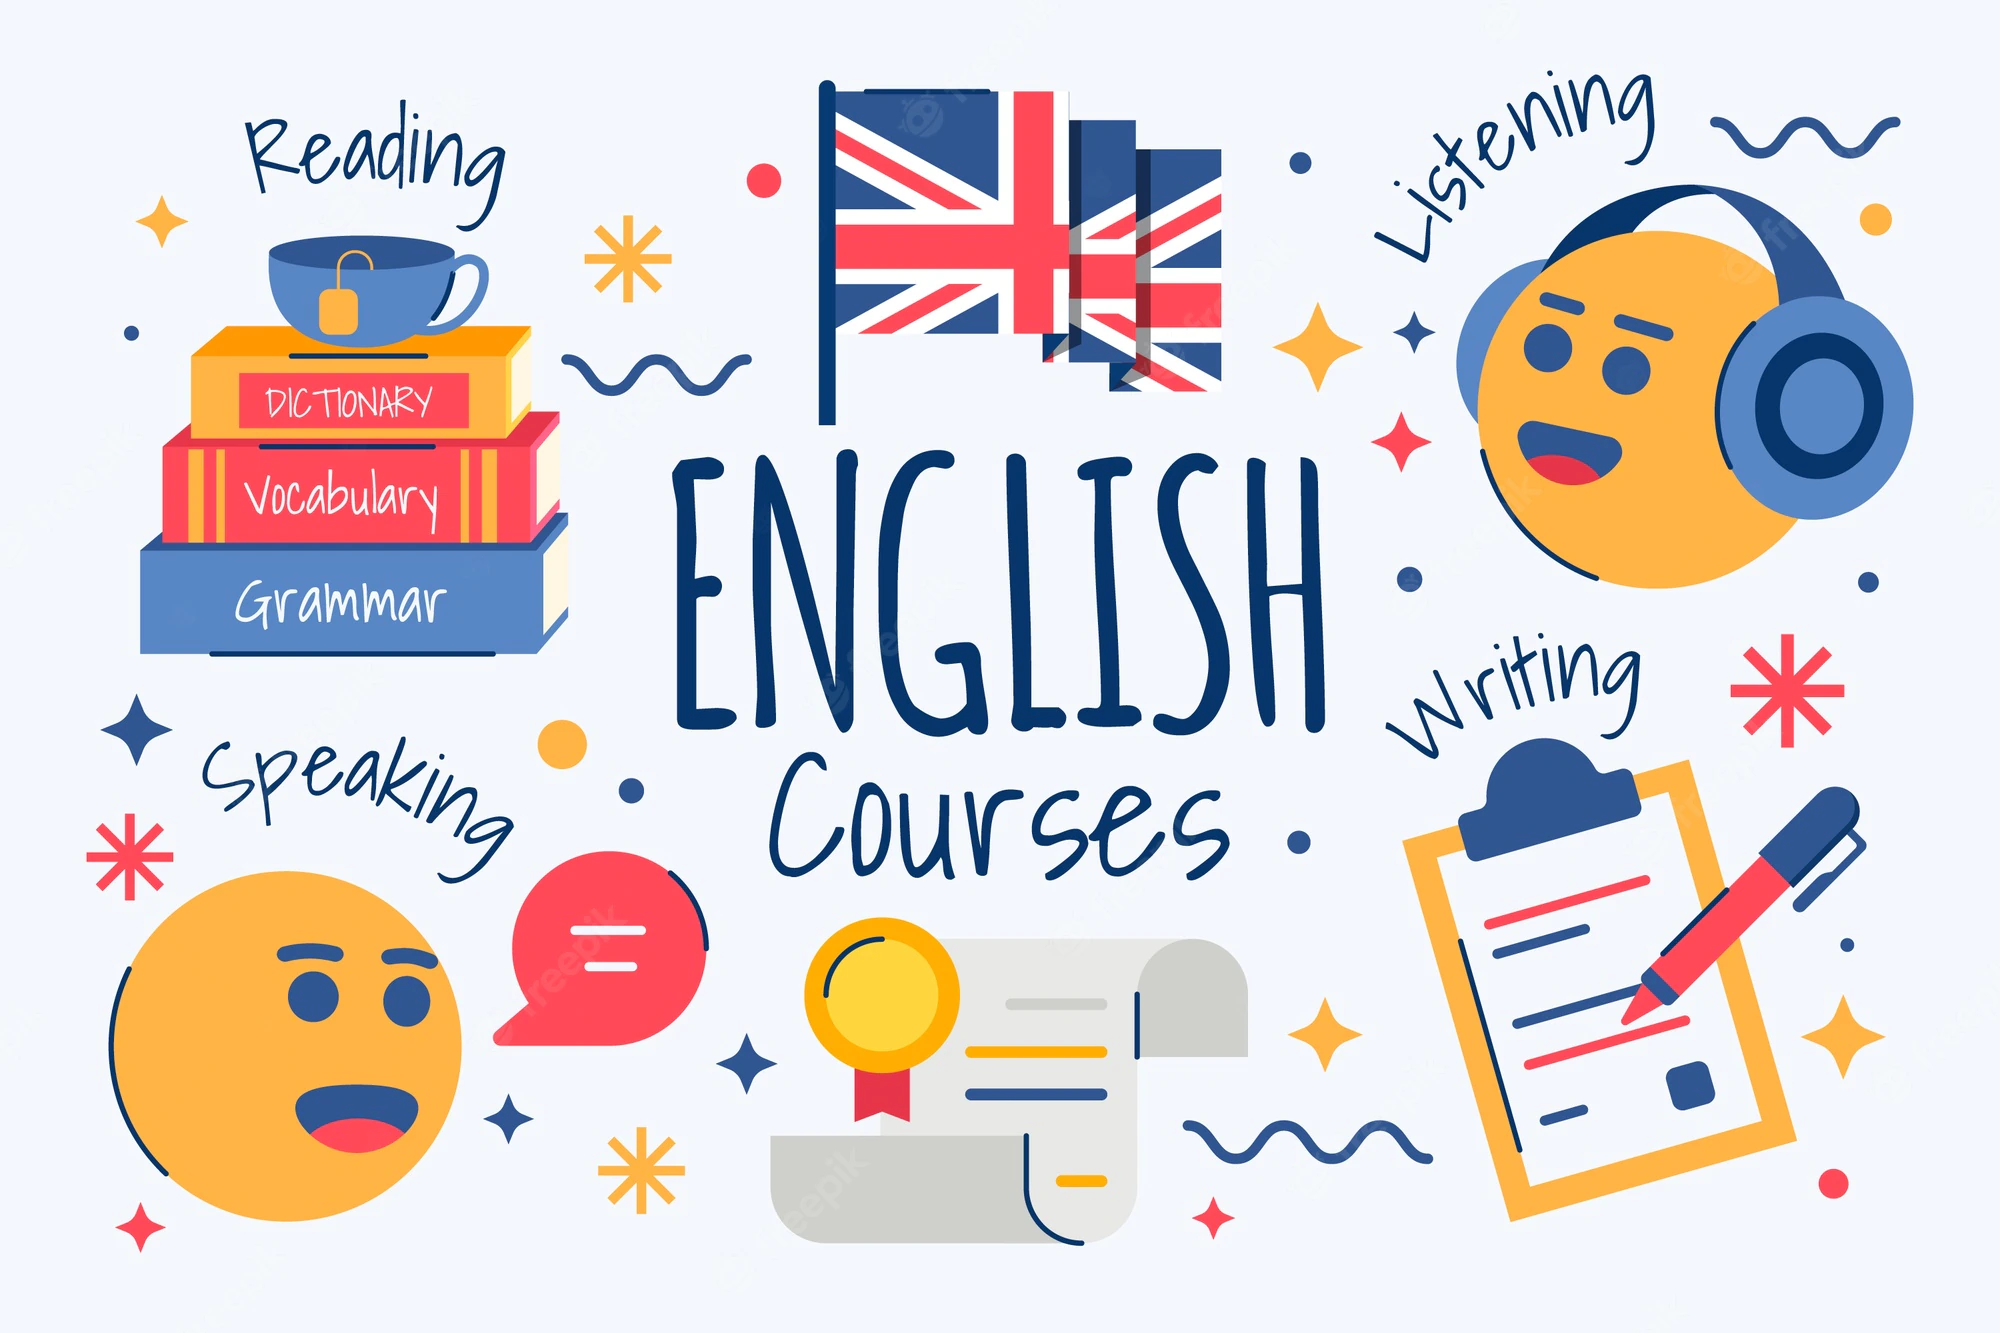 Apprendre L’anglais rapidement et couramment